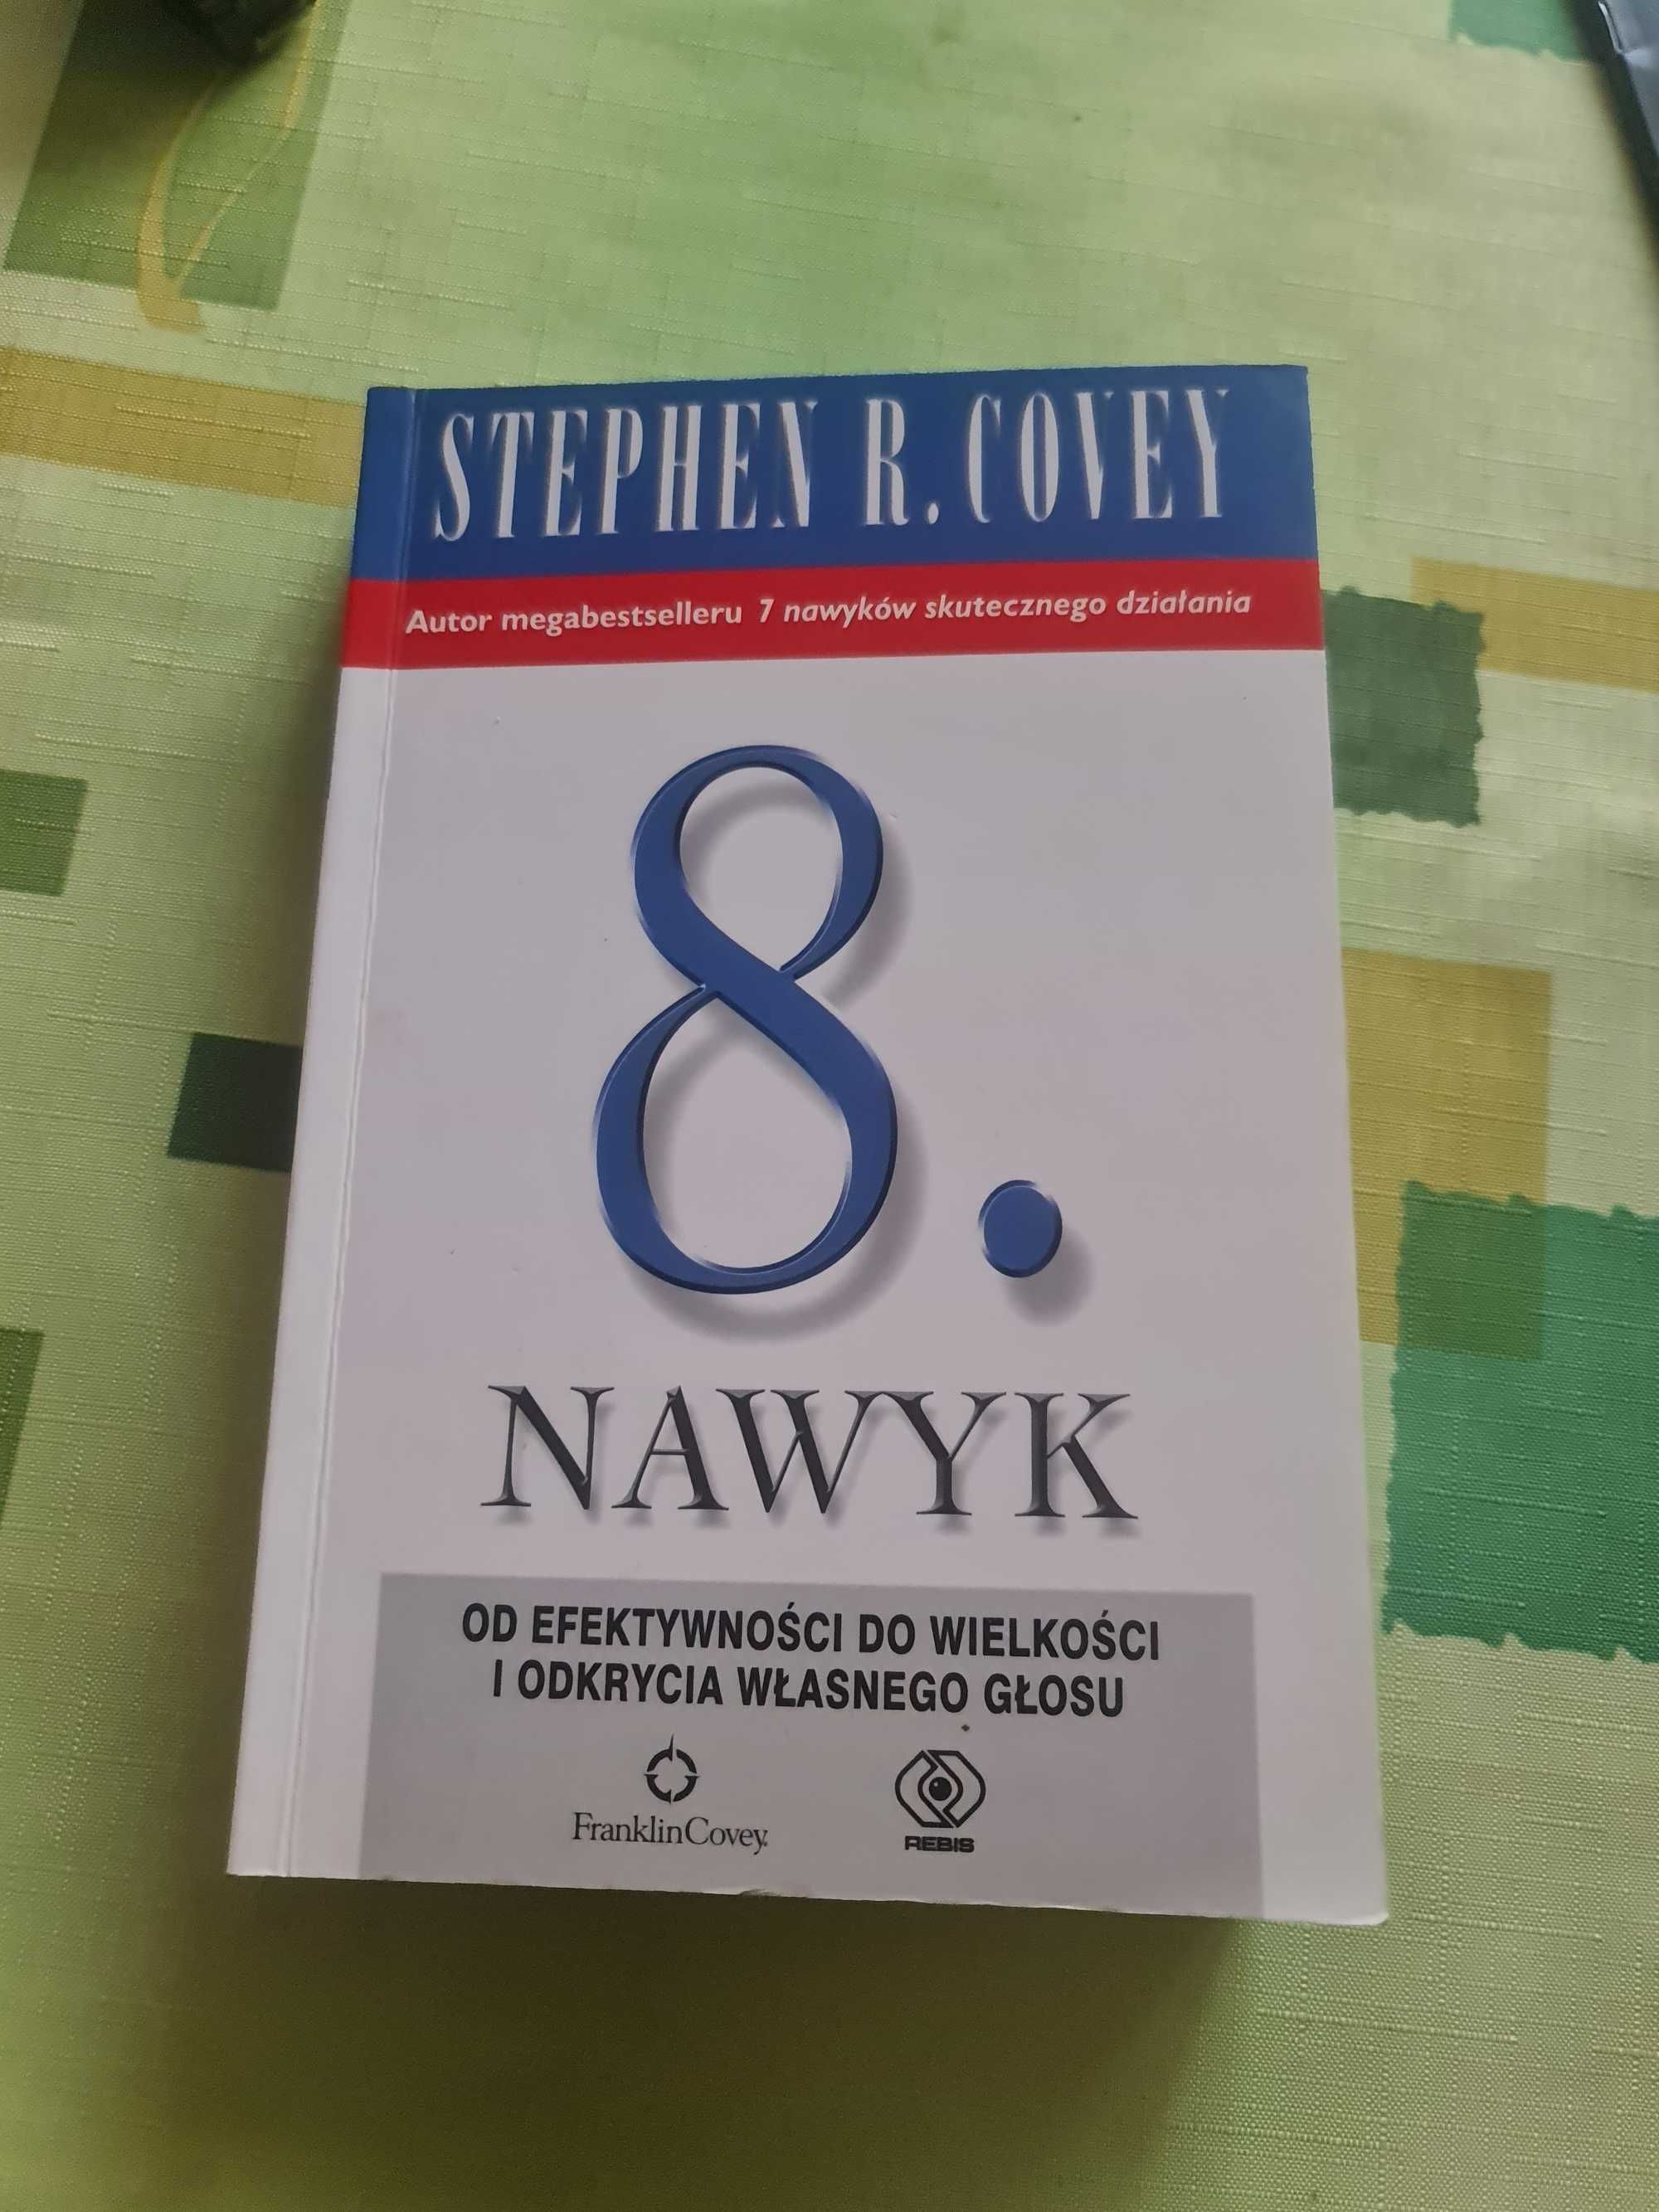 Stephen R. Convey - 8 Nawyk